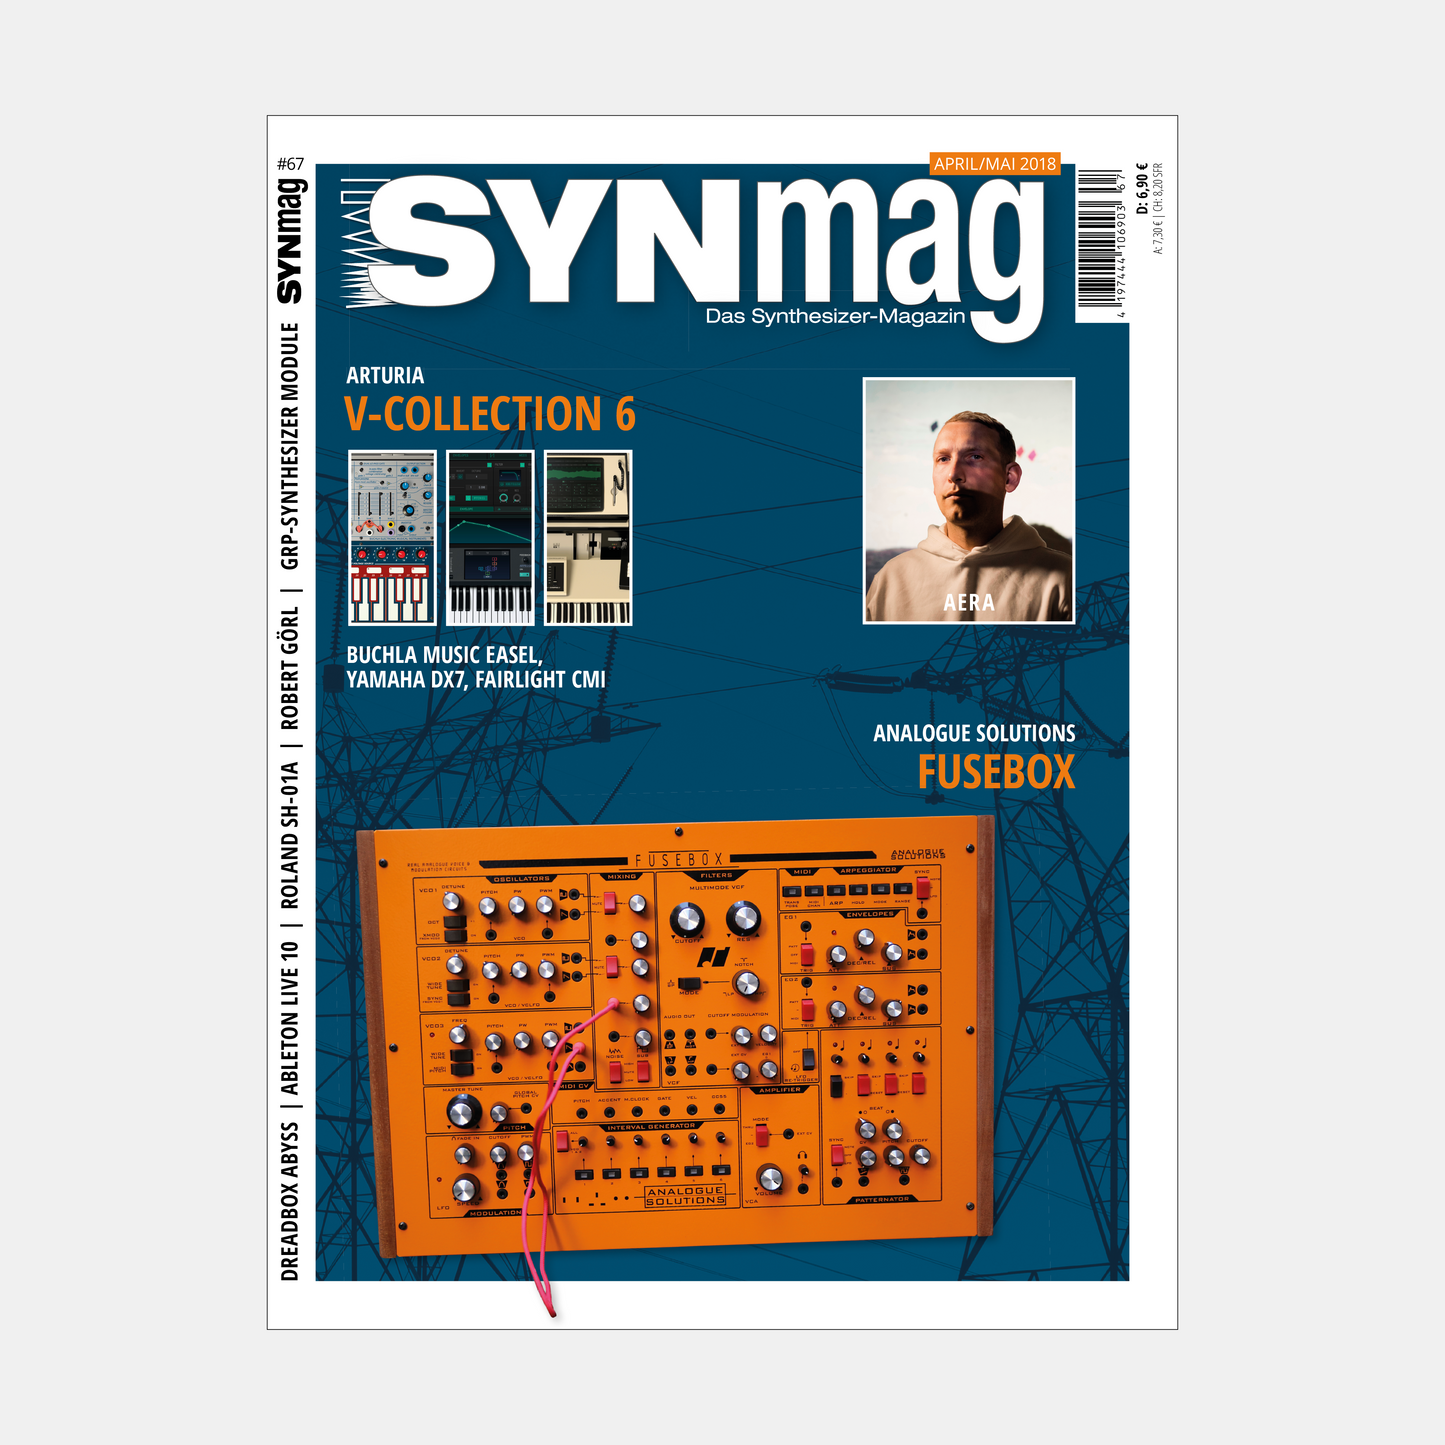 Synmag | Ausgabe 67 | April 2018 | ePaper